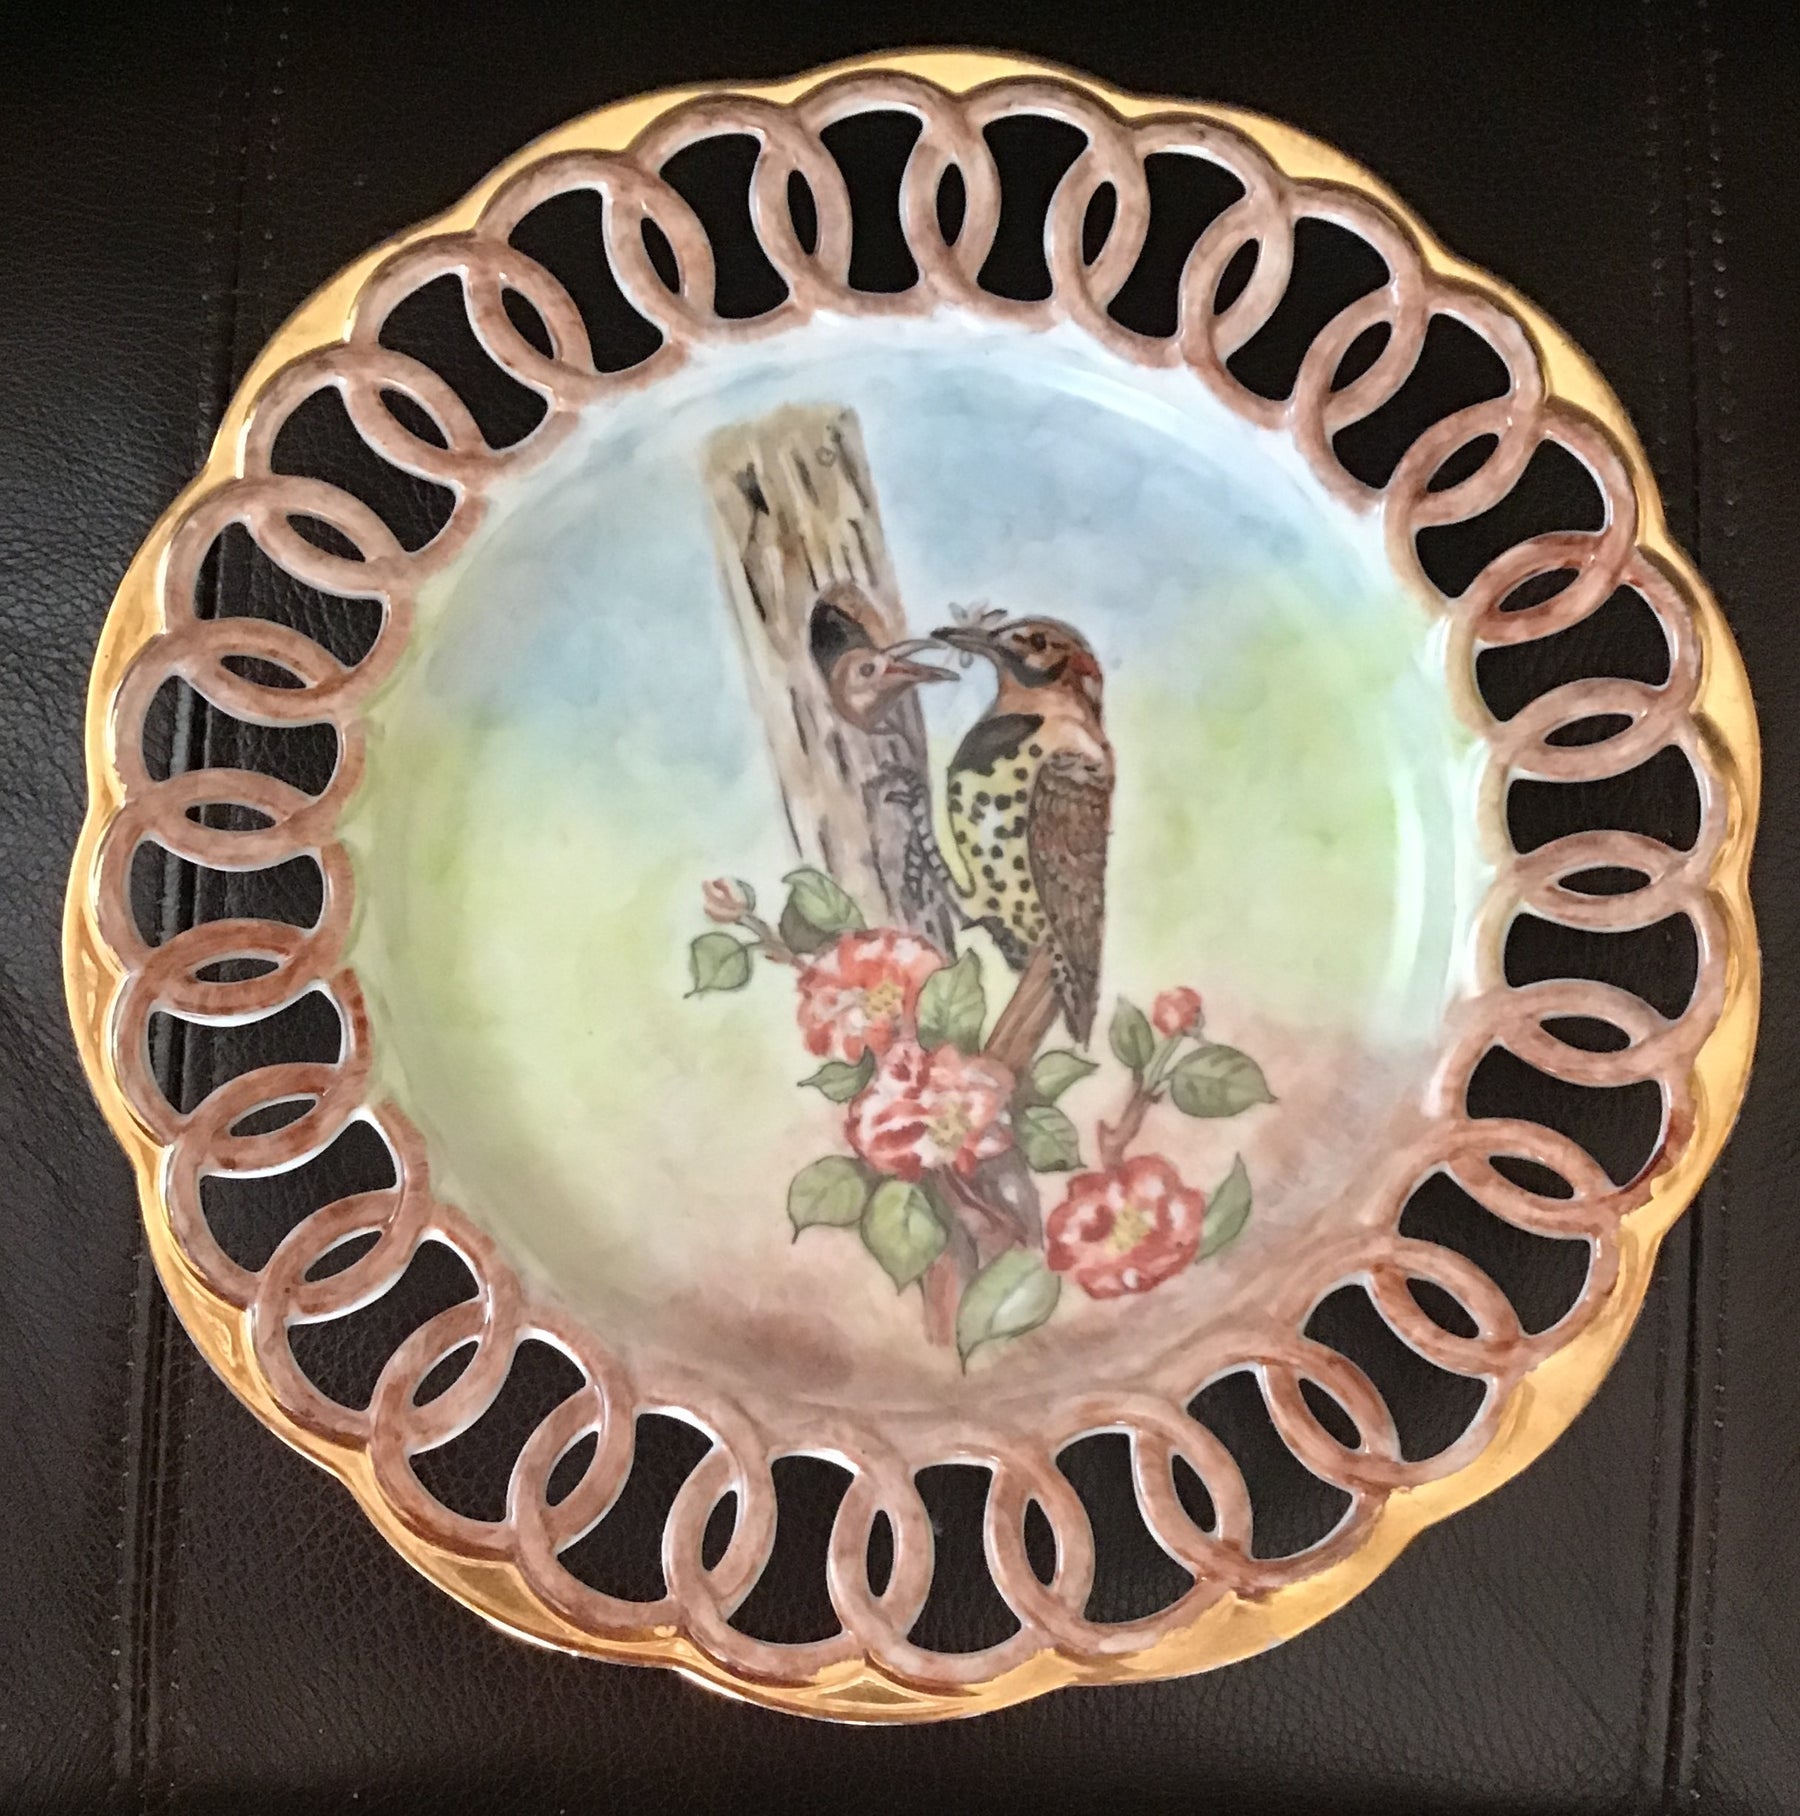 Birds on openwork plate